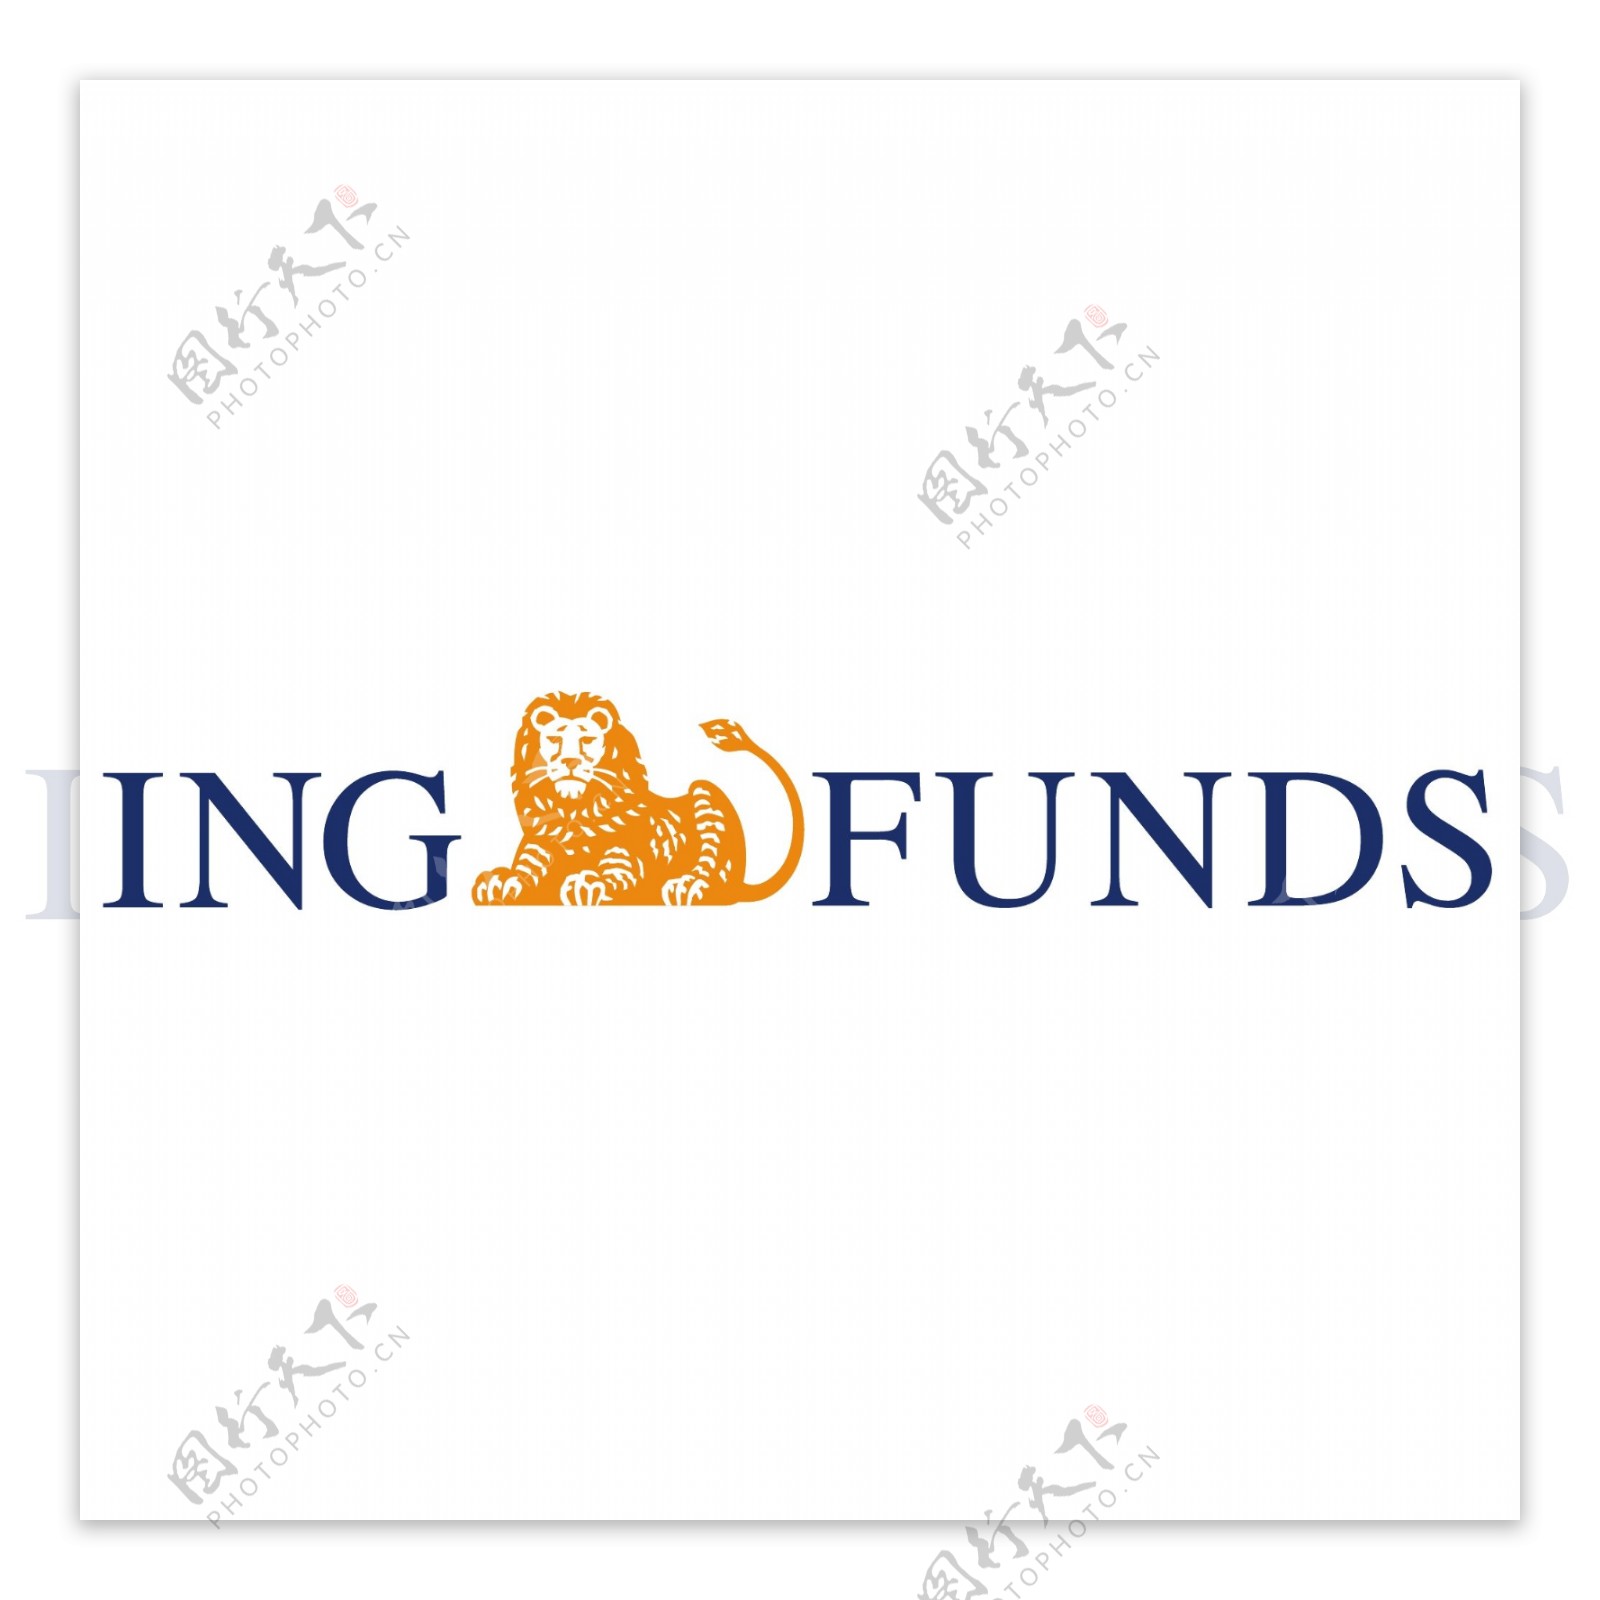 ING基金